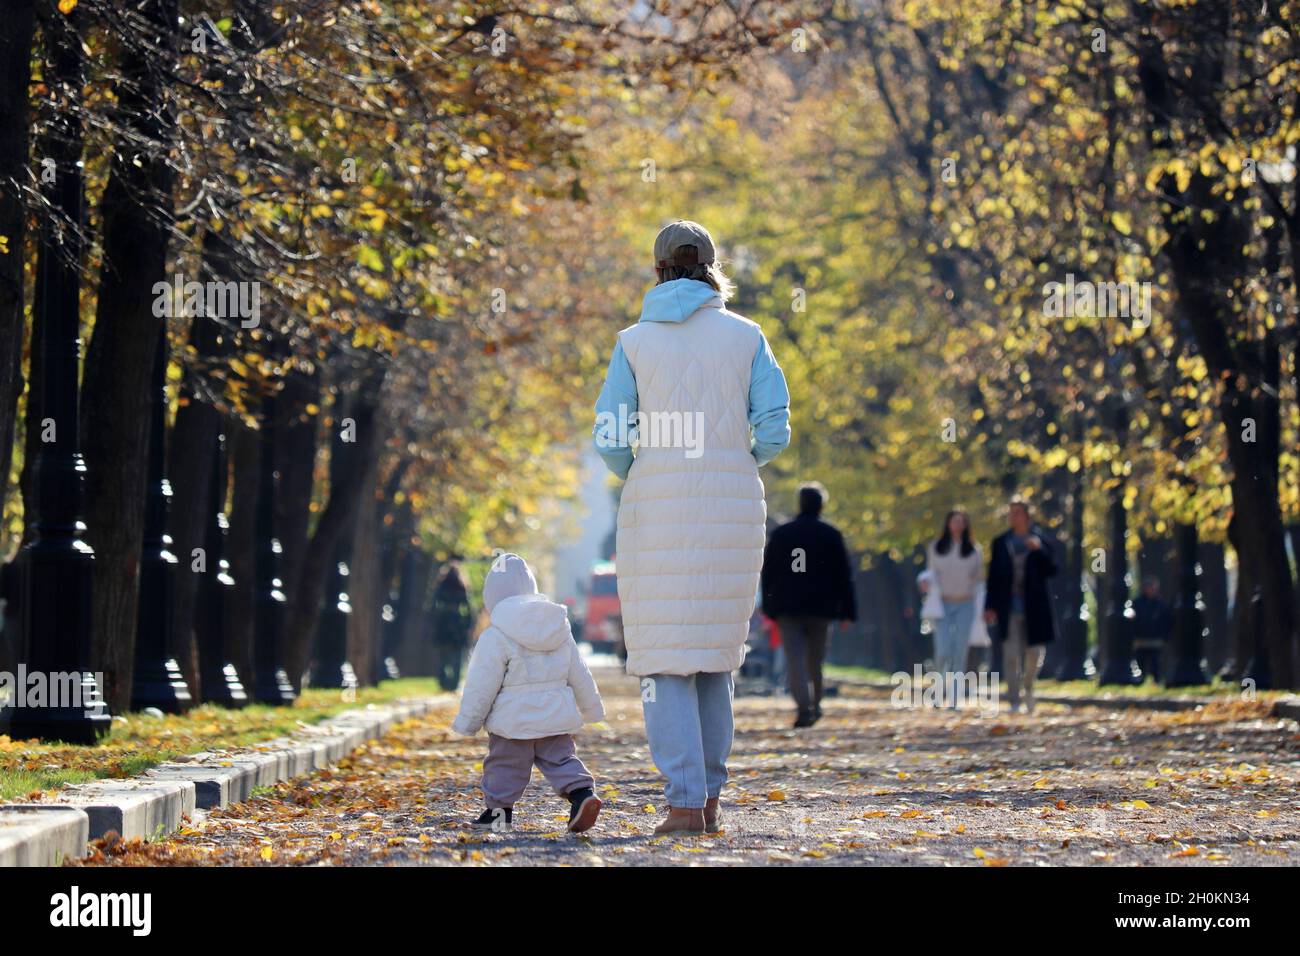 Mutter und Kind gehen im Herbstpark hinunter. Junge schlanke Frau und Laufkind, Konzept der Mutterschaft, alleinerziehende Mutter oder Babysitter Stockfoto